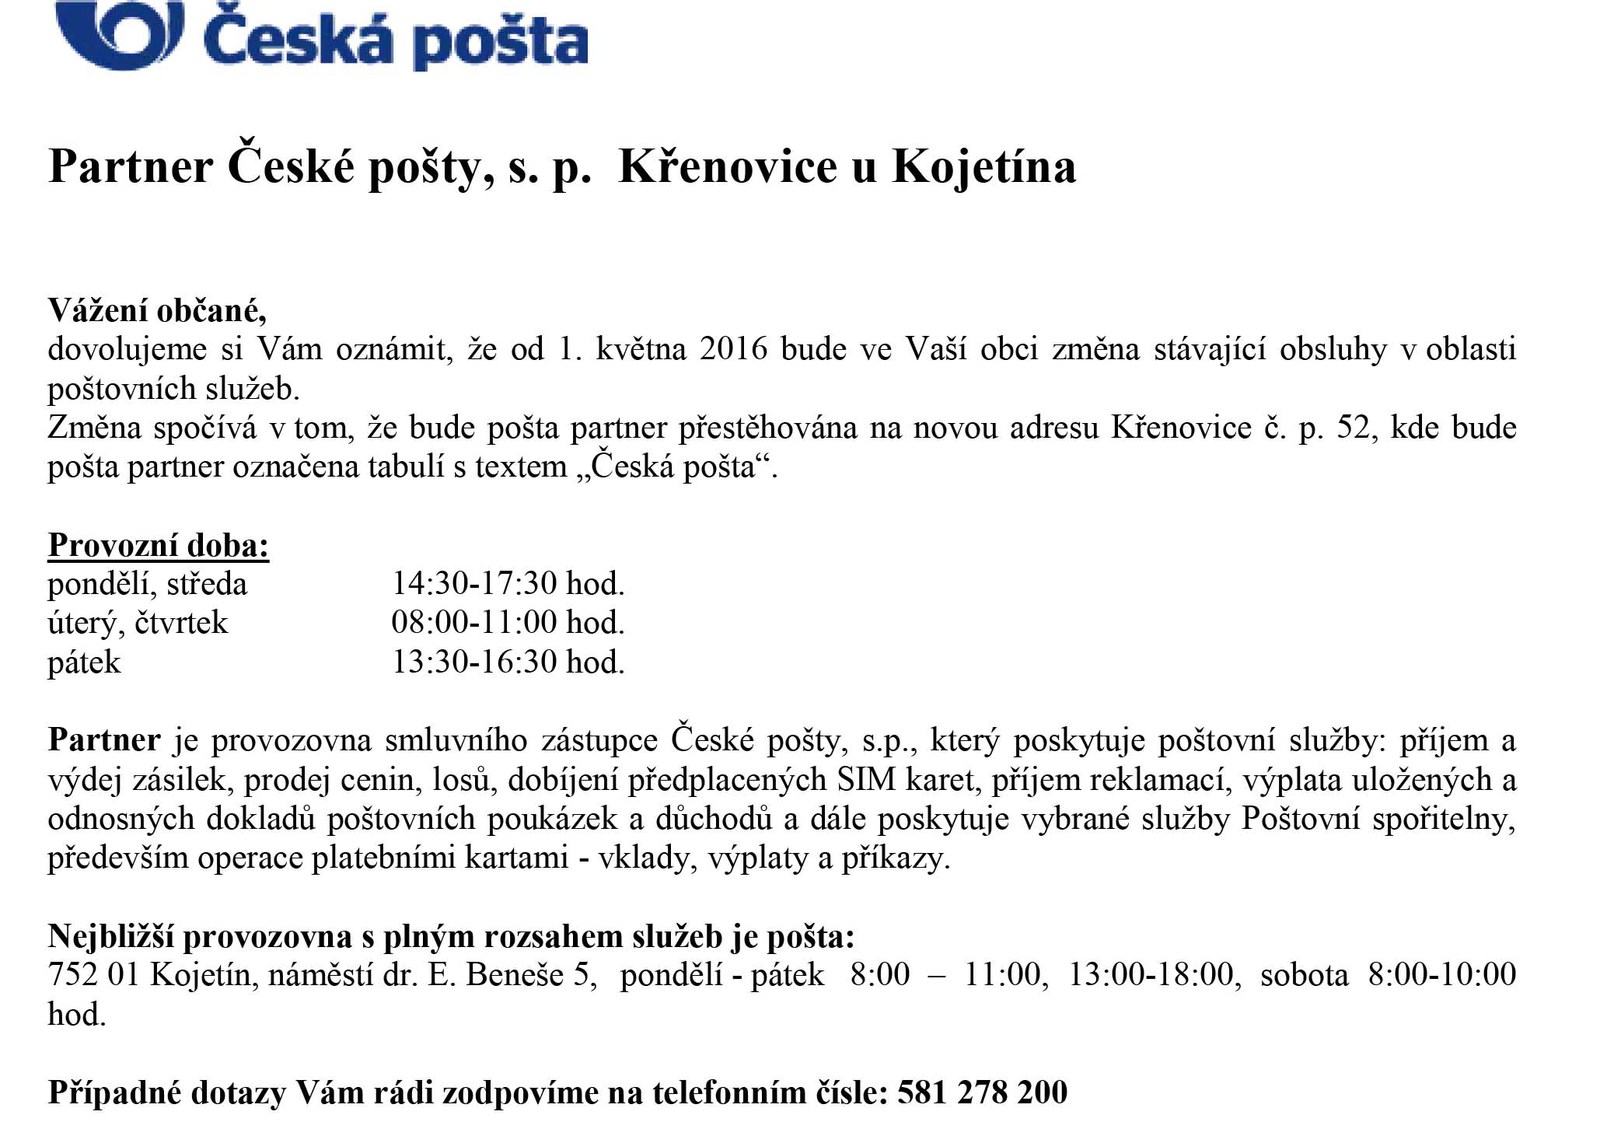 2016_04_27 - partner české pošty.jpg